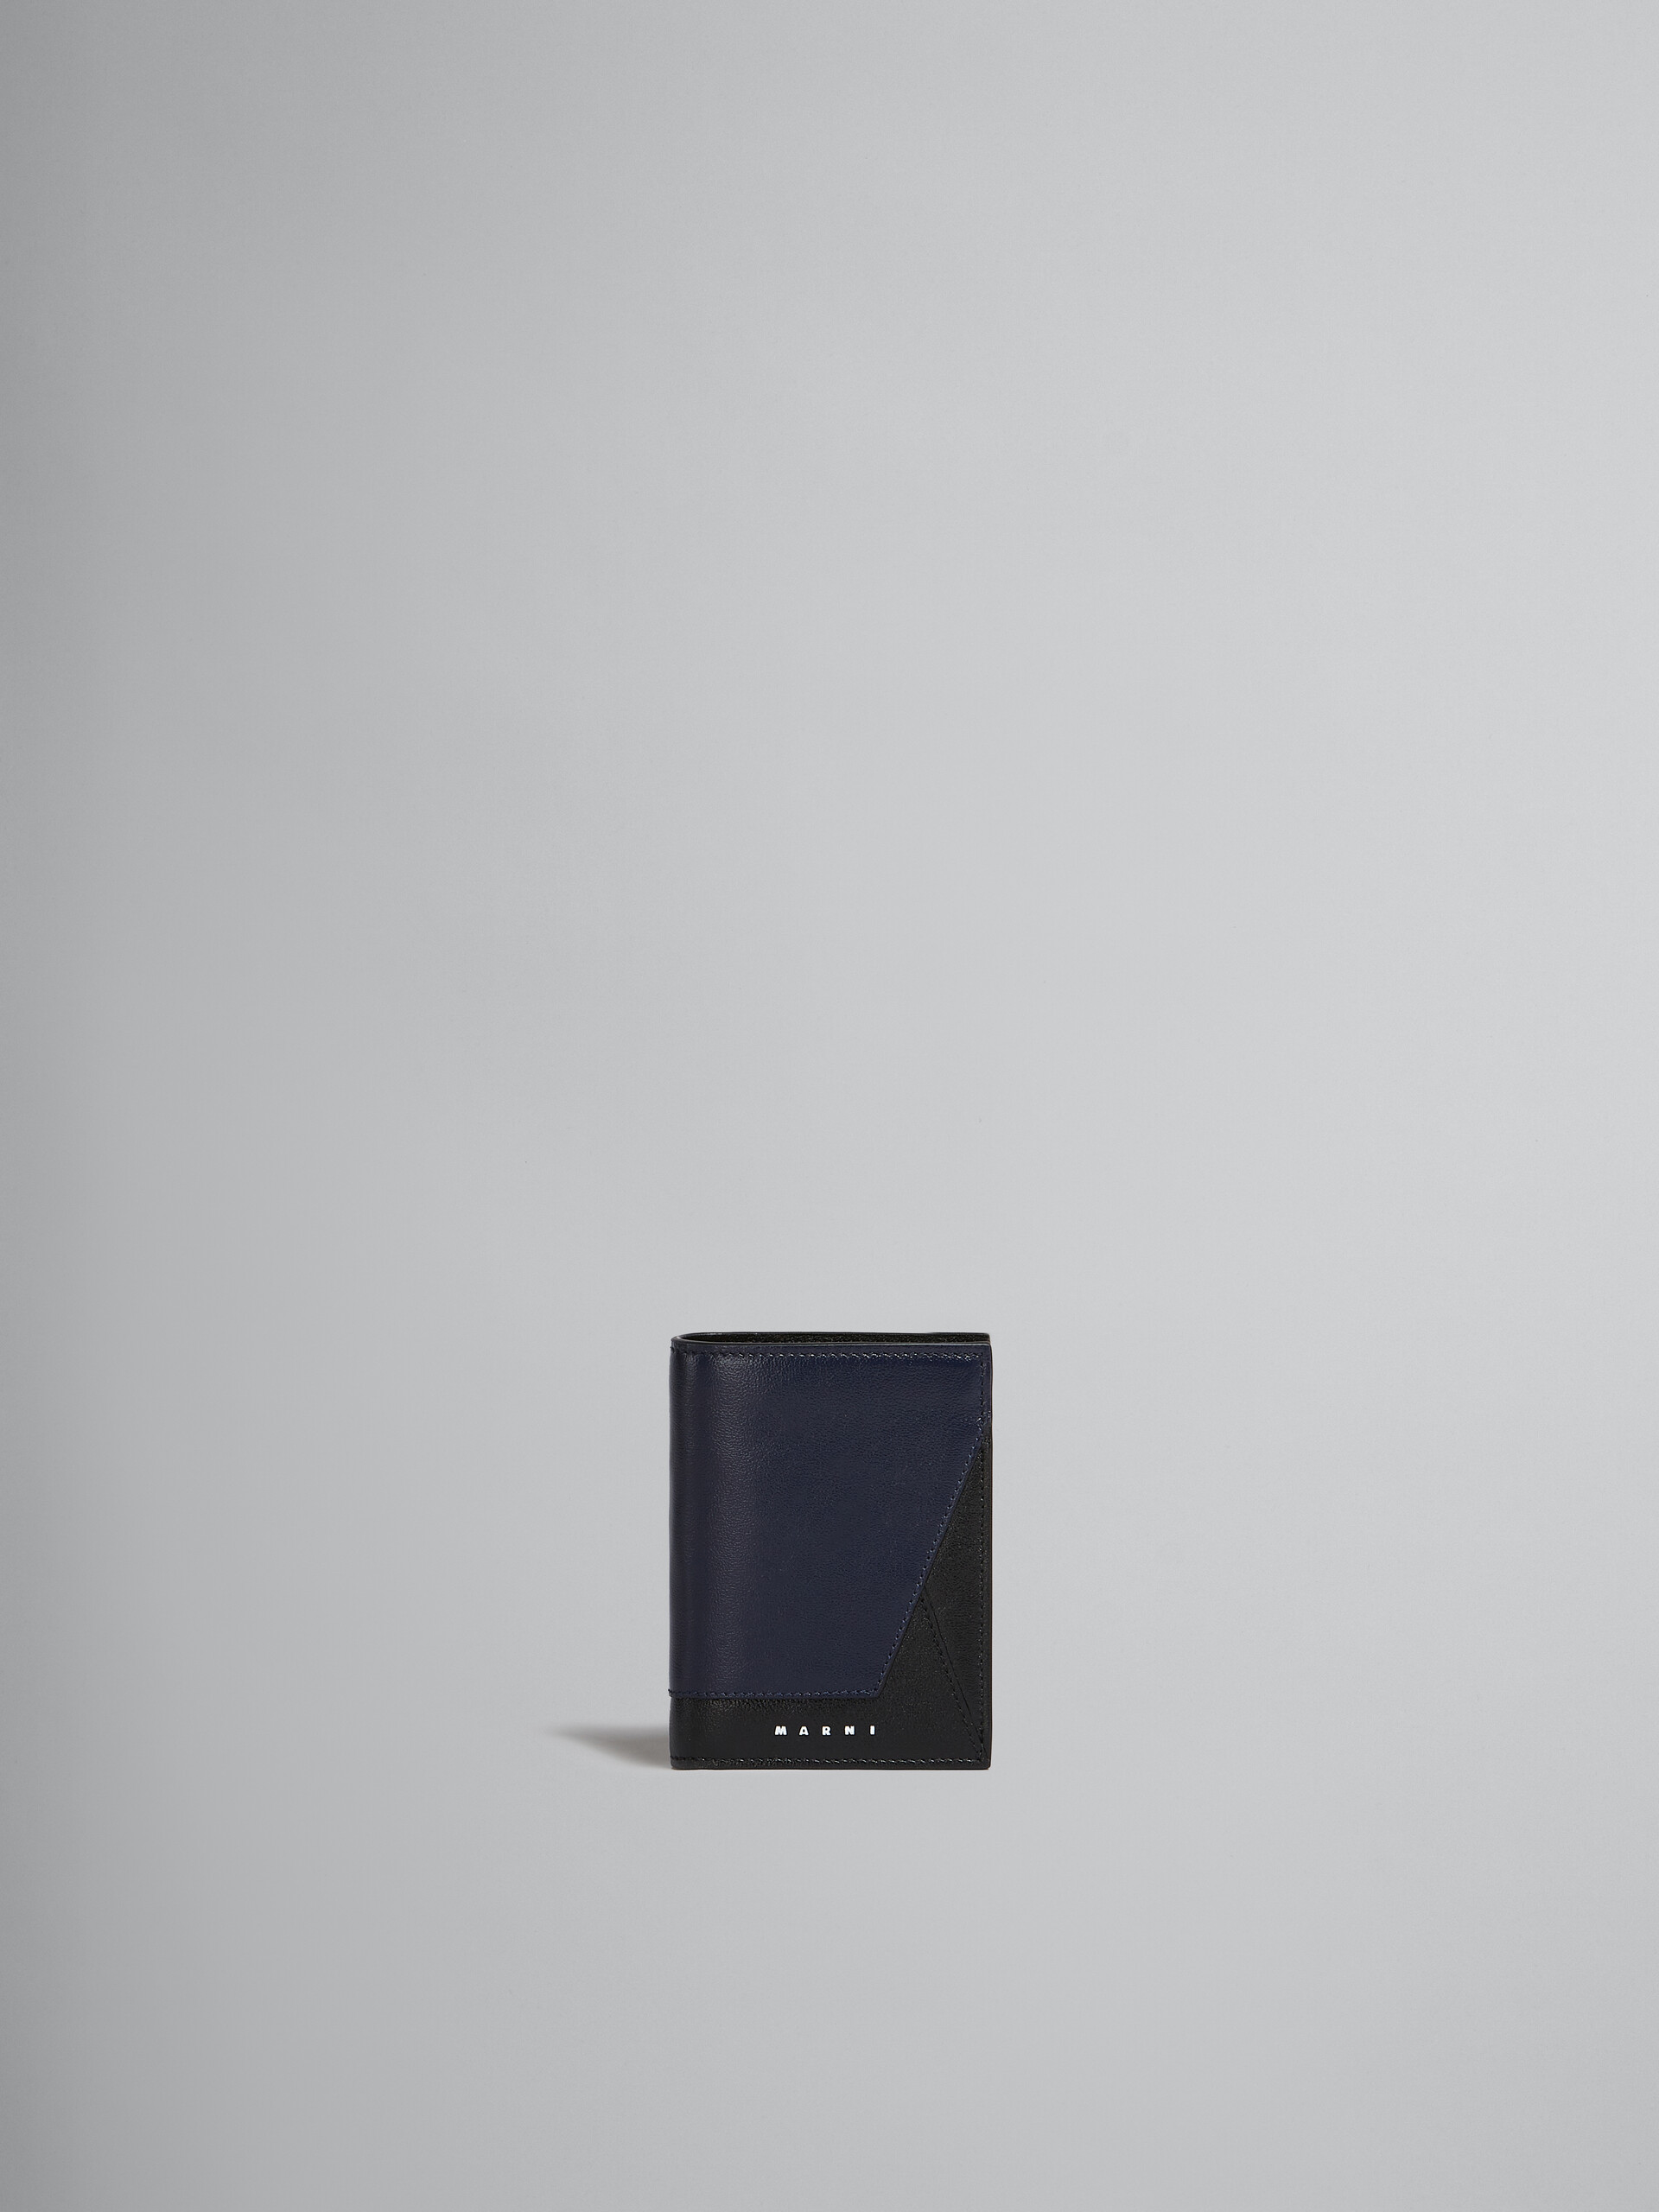 ネイビーブルーとブラック レザー製二つ折りウォレット - 財布 - Image 1